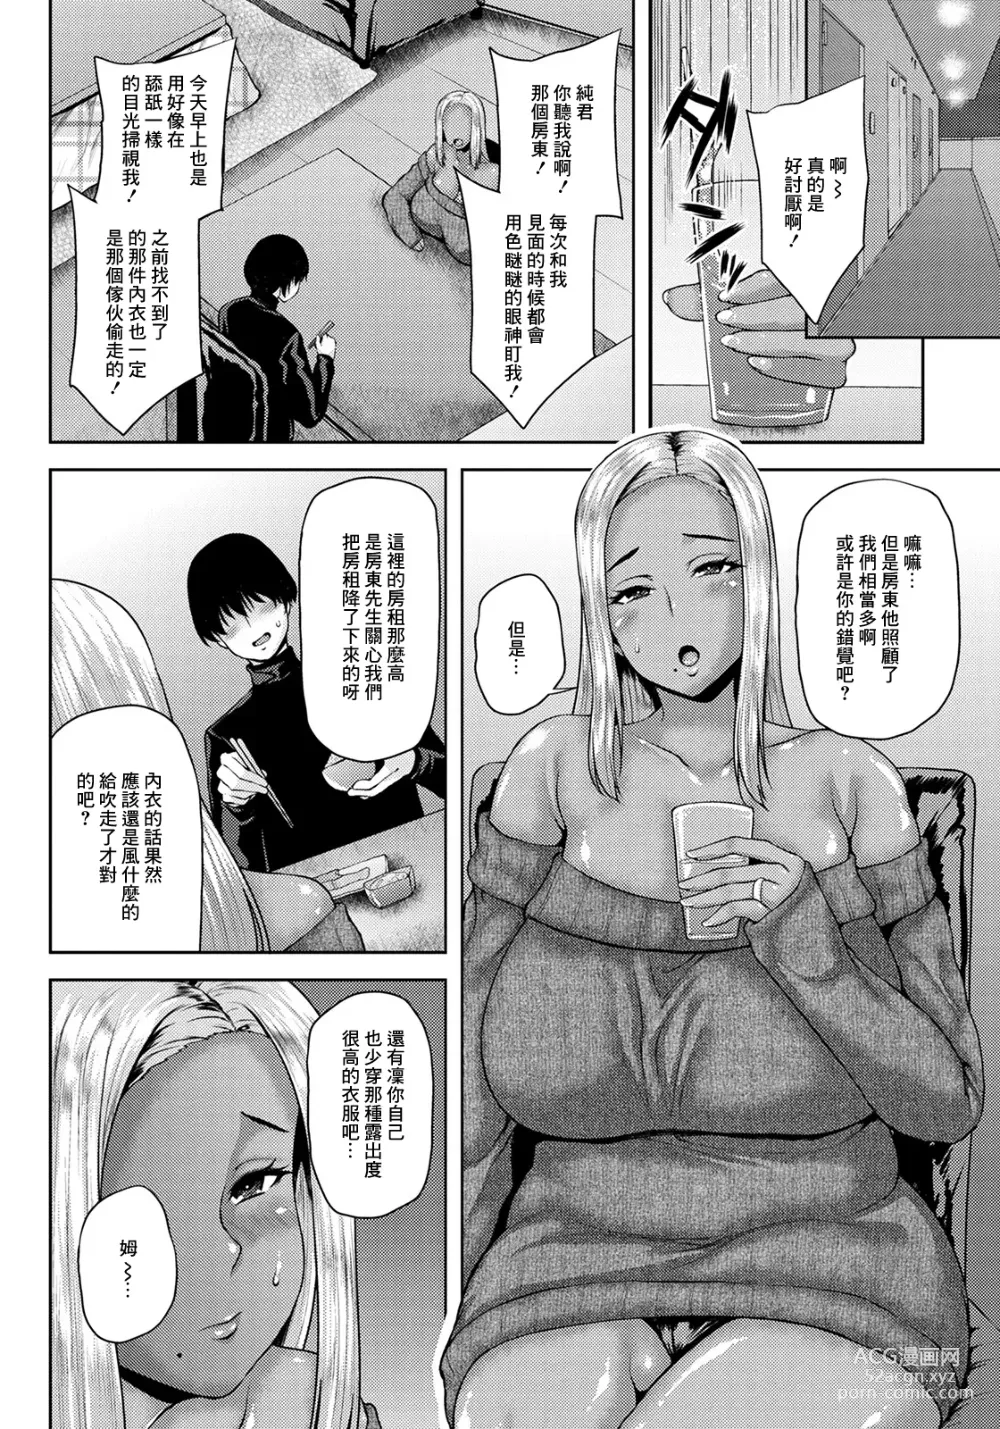 Page 2 of manga NTR Hypnosis Appli